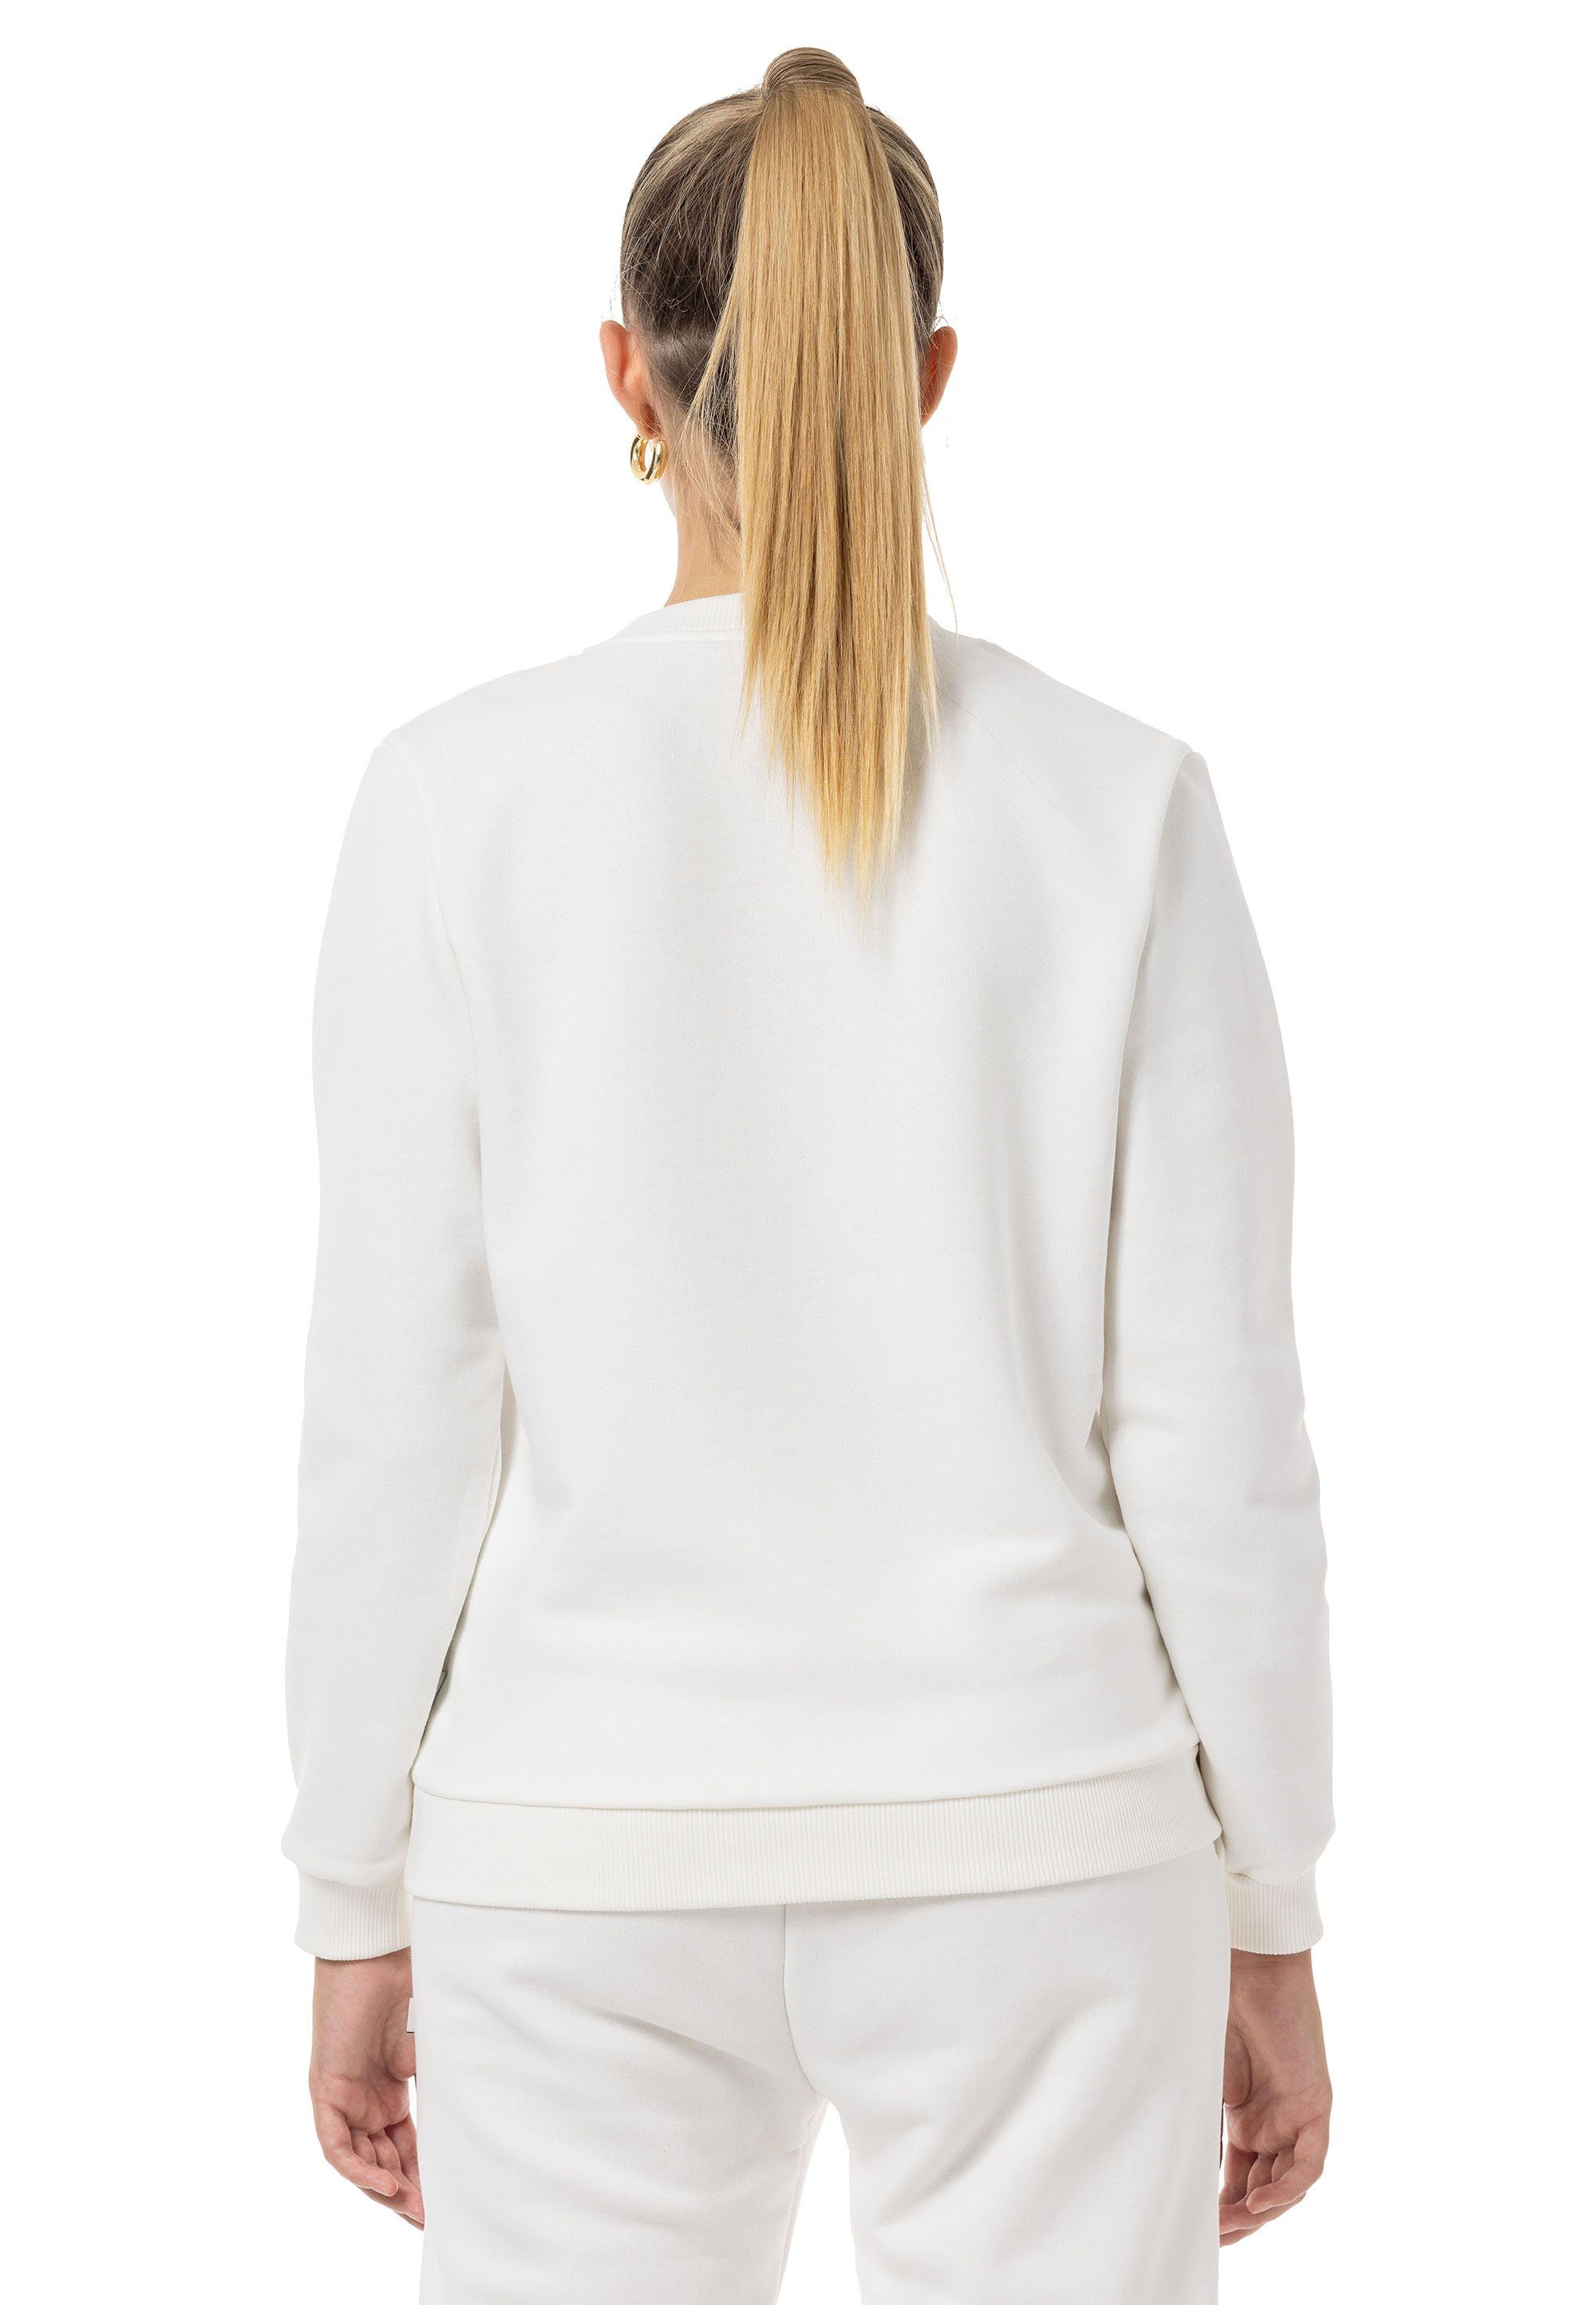 RedBridge Sweatshirt Rundhals Ecru Pullover Premium Qualität